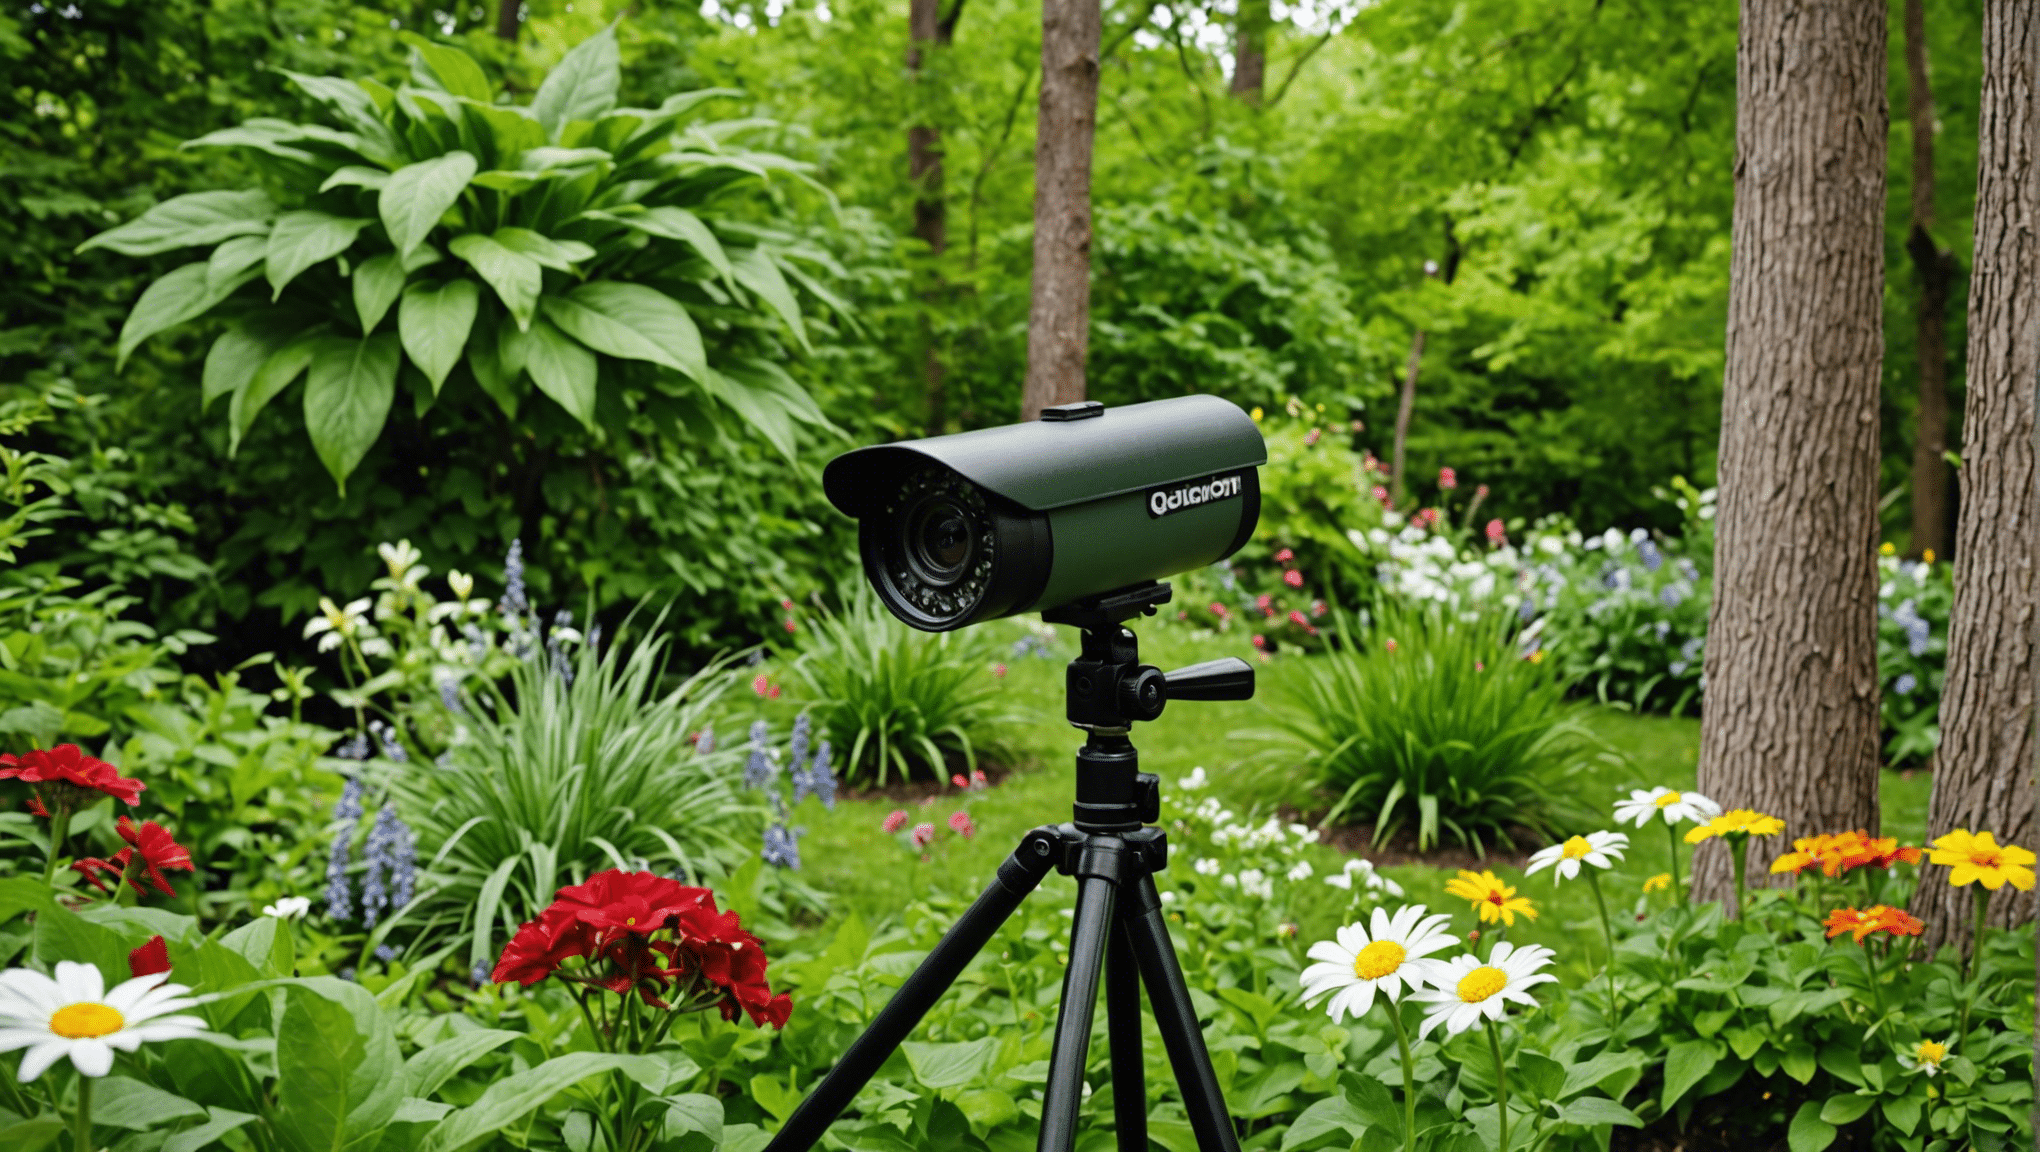 découvrez nos caméras de jardin pour capturer les animaux en action et mettre la nature au point. explorez notre sélection de caméras de haute qualité activées par le mouvement pour les passionnés de la faune.